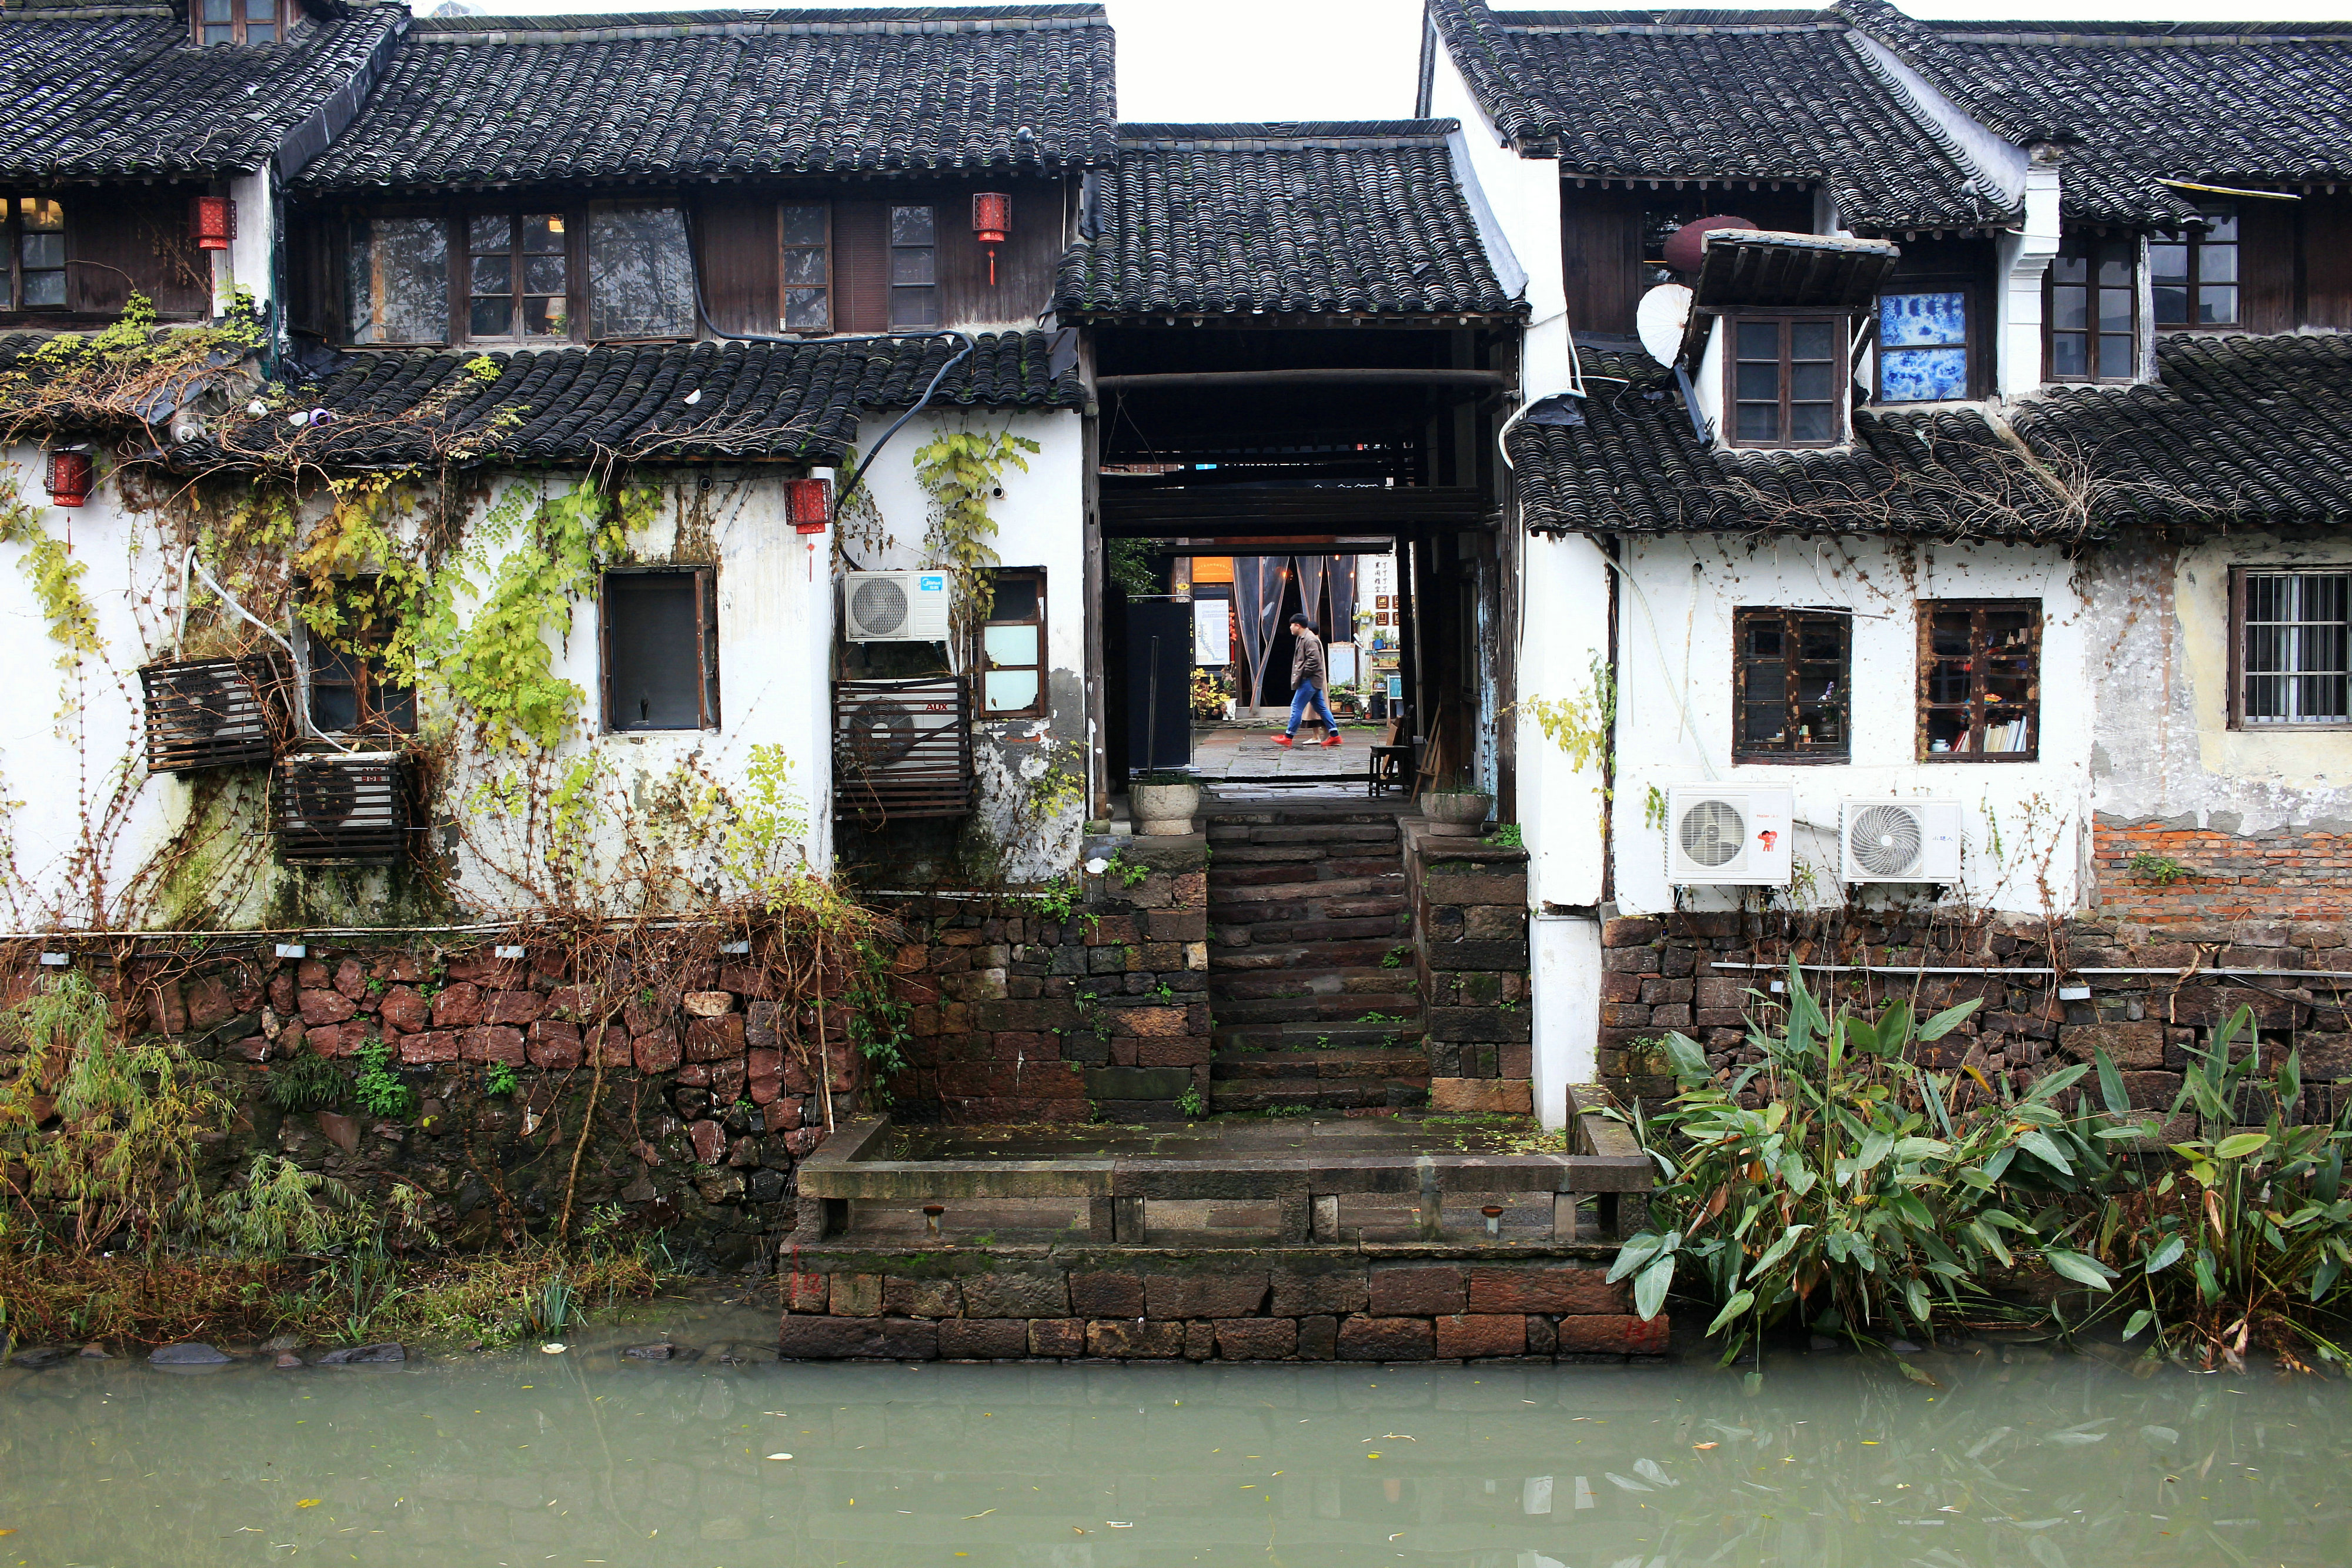 杭州市区的这条小街,依然展示着清末民初期间下层人民的生活环境